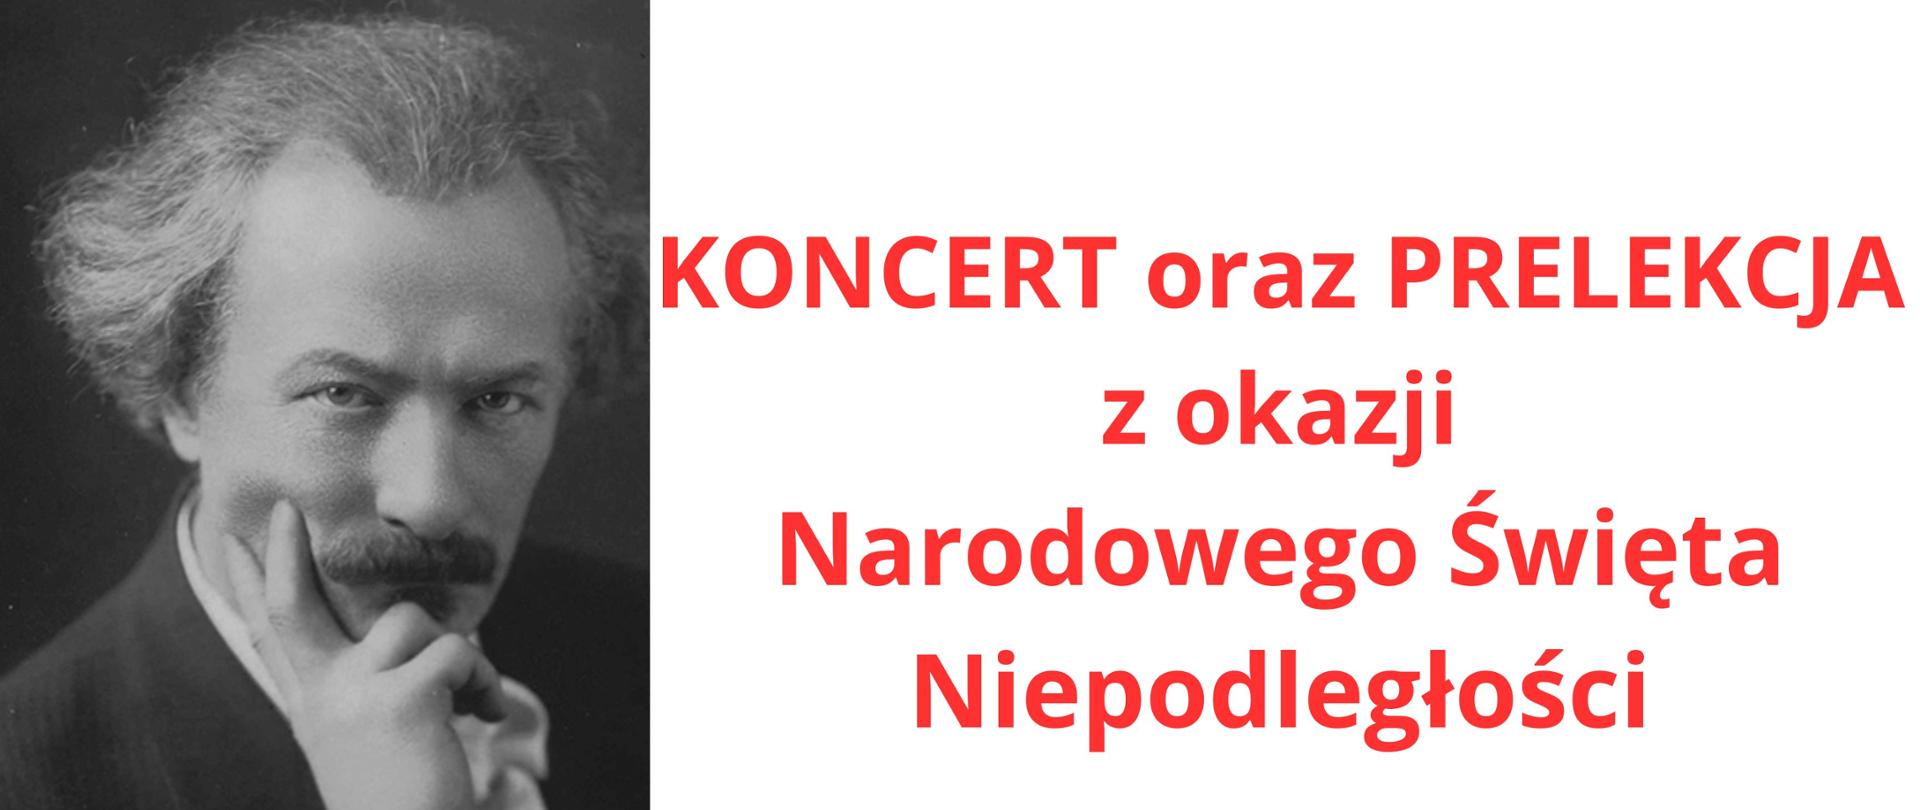 Plakat, po lewej stronie zdjęcie czarno-białe I.J. Paderewskiego po prawej stronie napisy koloru czerwonego na białym tle napis "koncert oraz prelekcja z okazji Narodowego Święta Niepodległości"